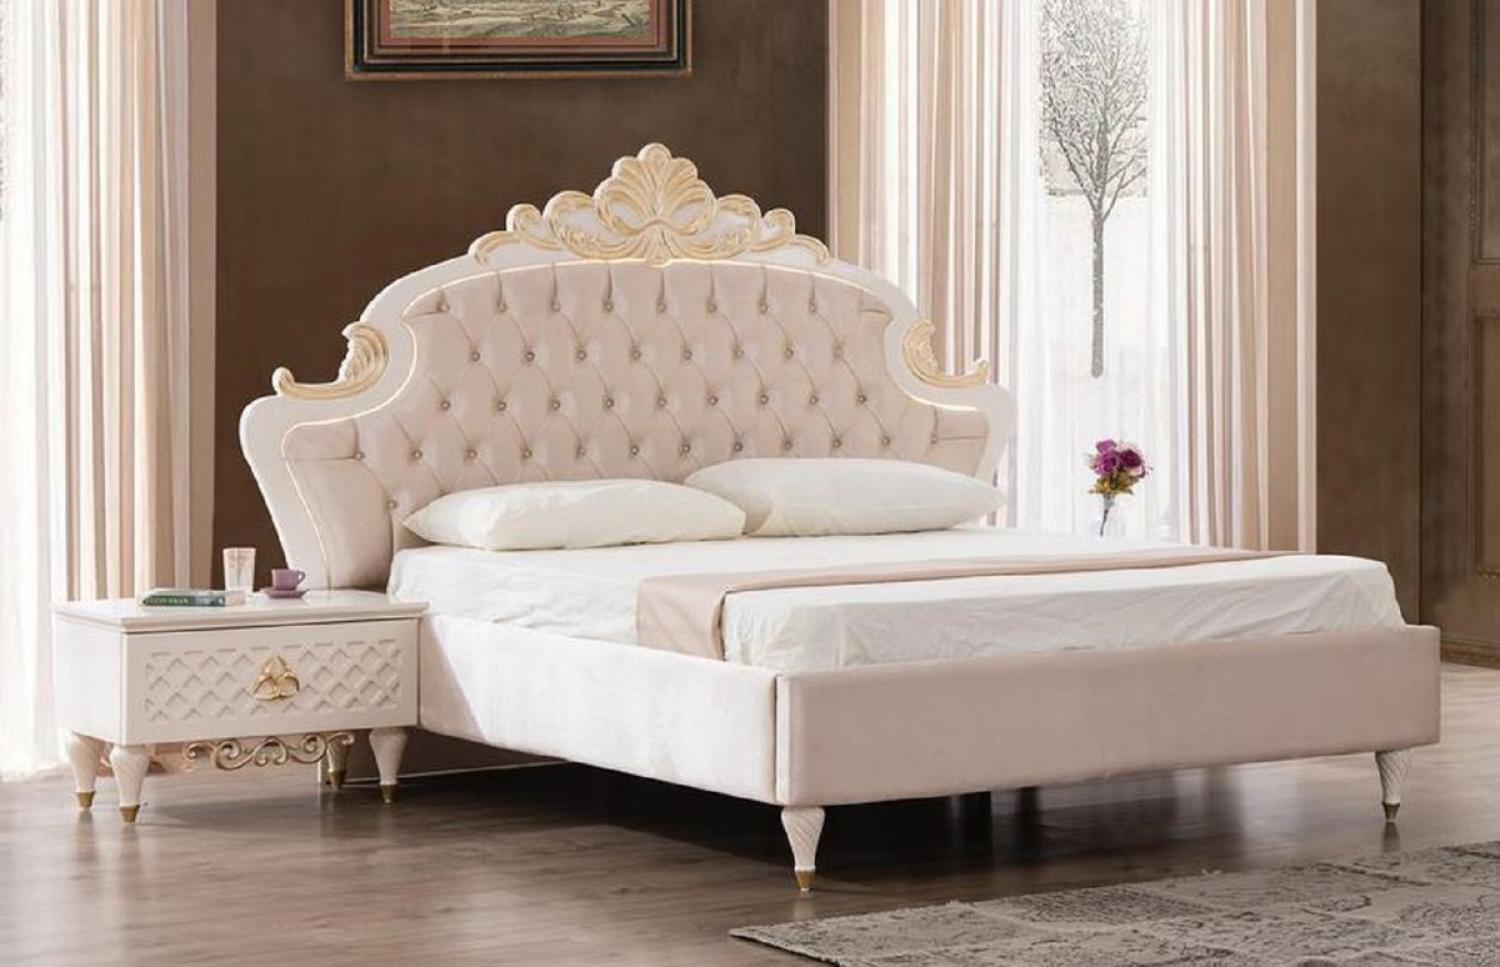 Casa Padrino Luxus Barock Schlafzimmer Set Rosa / Weiß / Gold - 1 Doppelbett mit Kopfteil & 2 Nachttische - Barock Schlafzimmer Möbel - Edel & Prunkvoll Bild 1